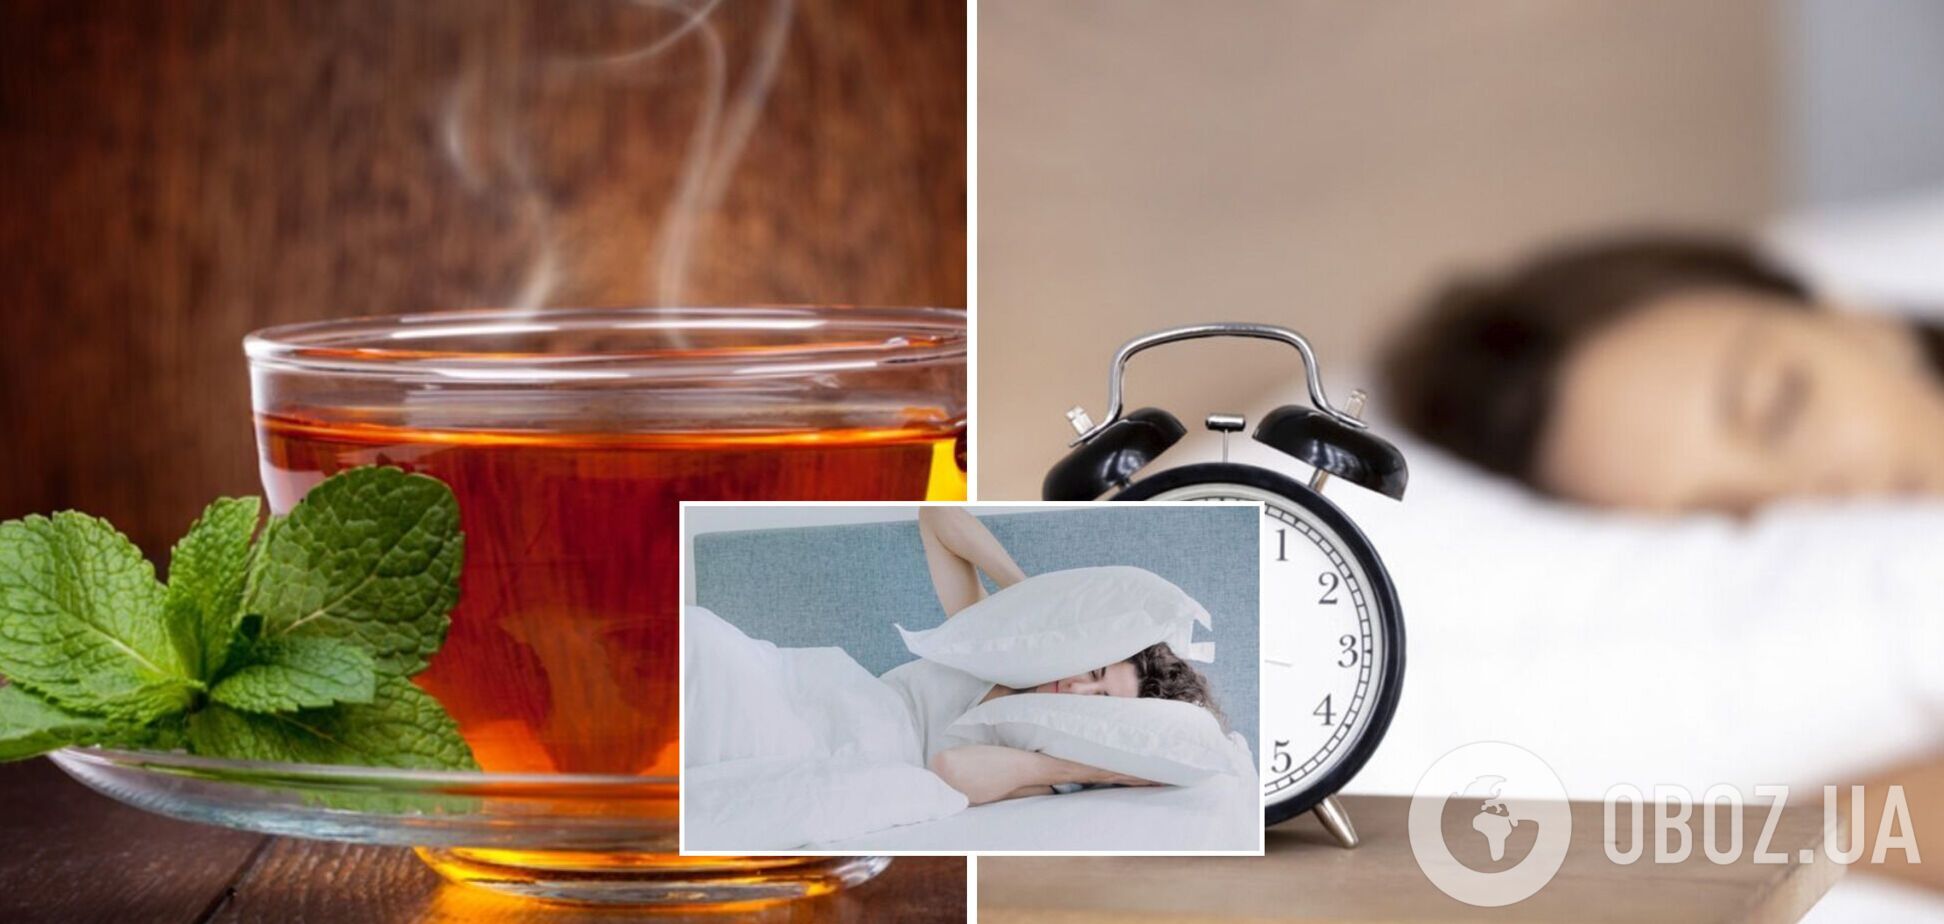 Пять напитков могут заметно улучшить качество сна: ученые поделились результатами исследований